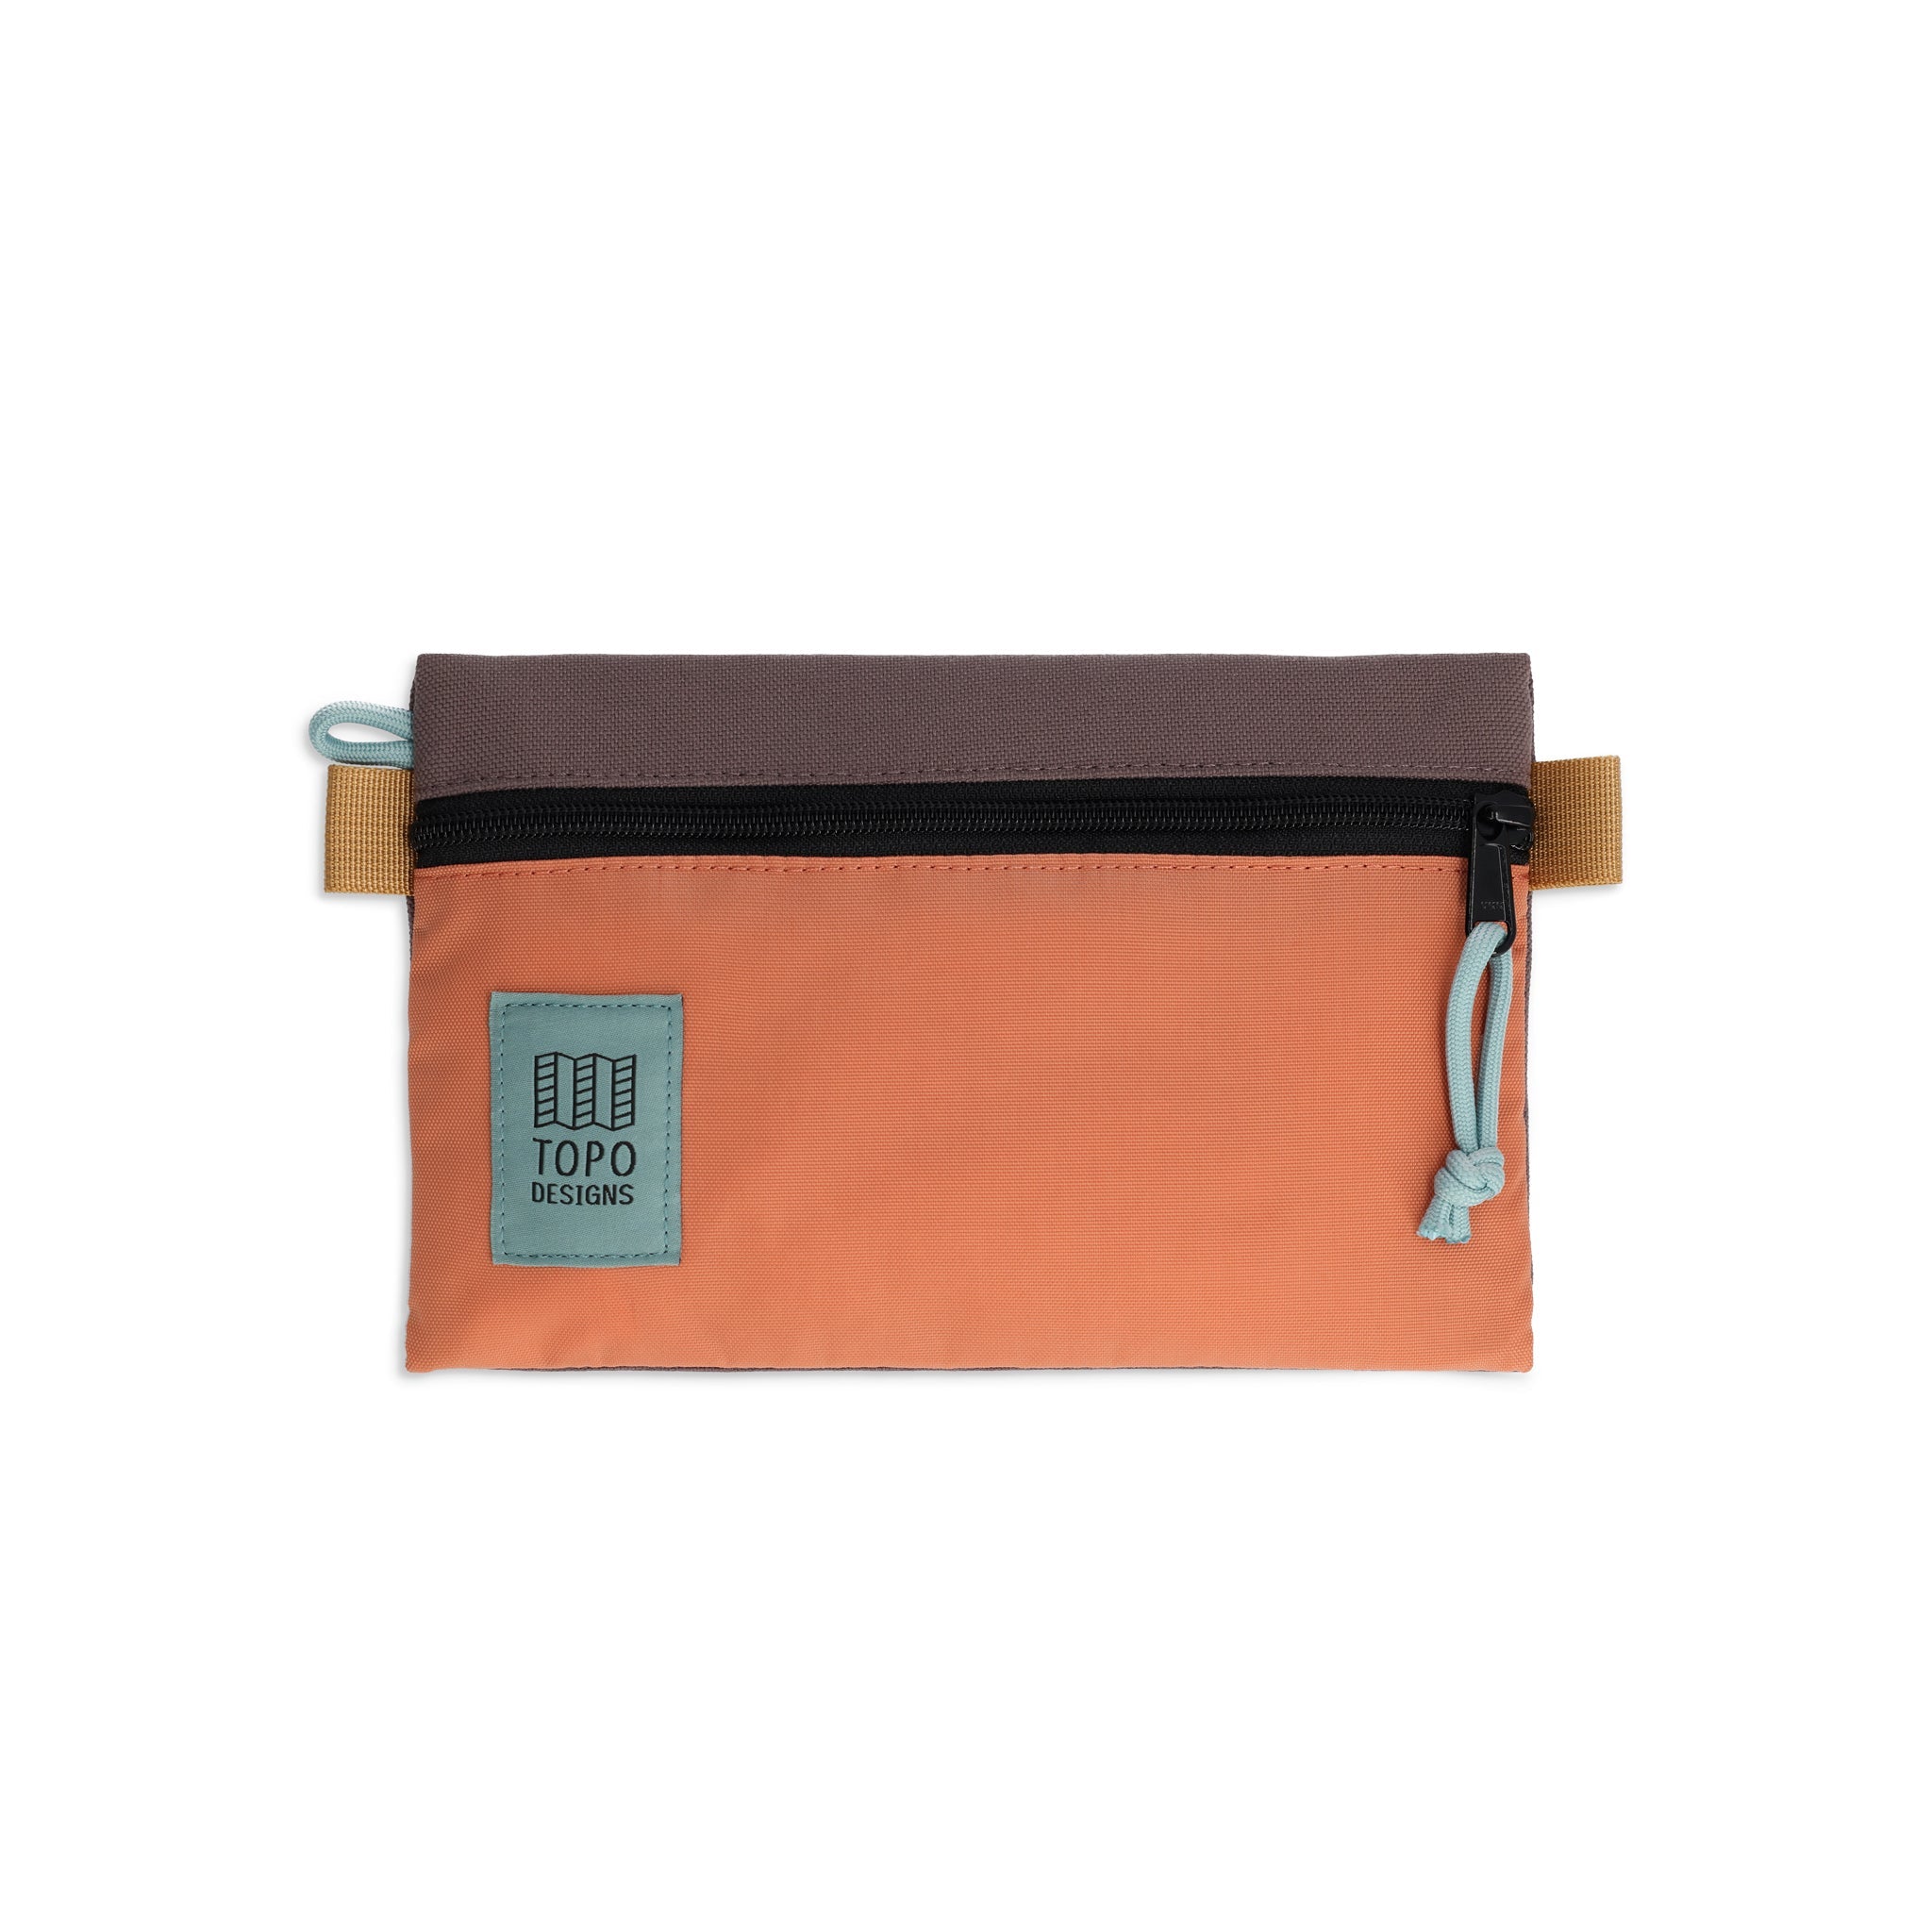 Topo Designs Accessory Bag "Small" in "Coral / Peppercorn"